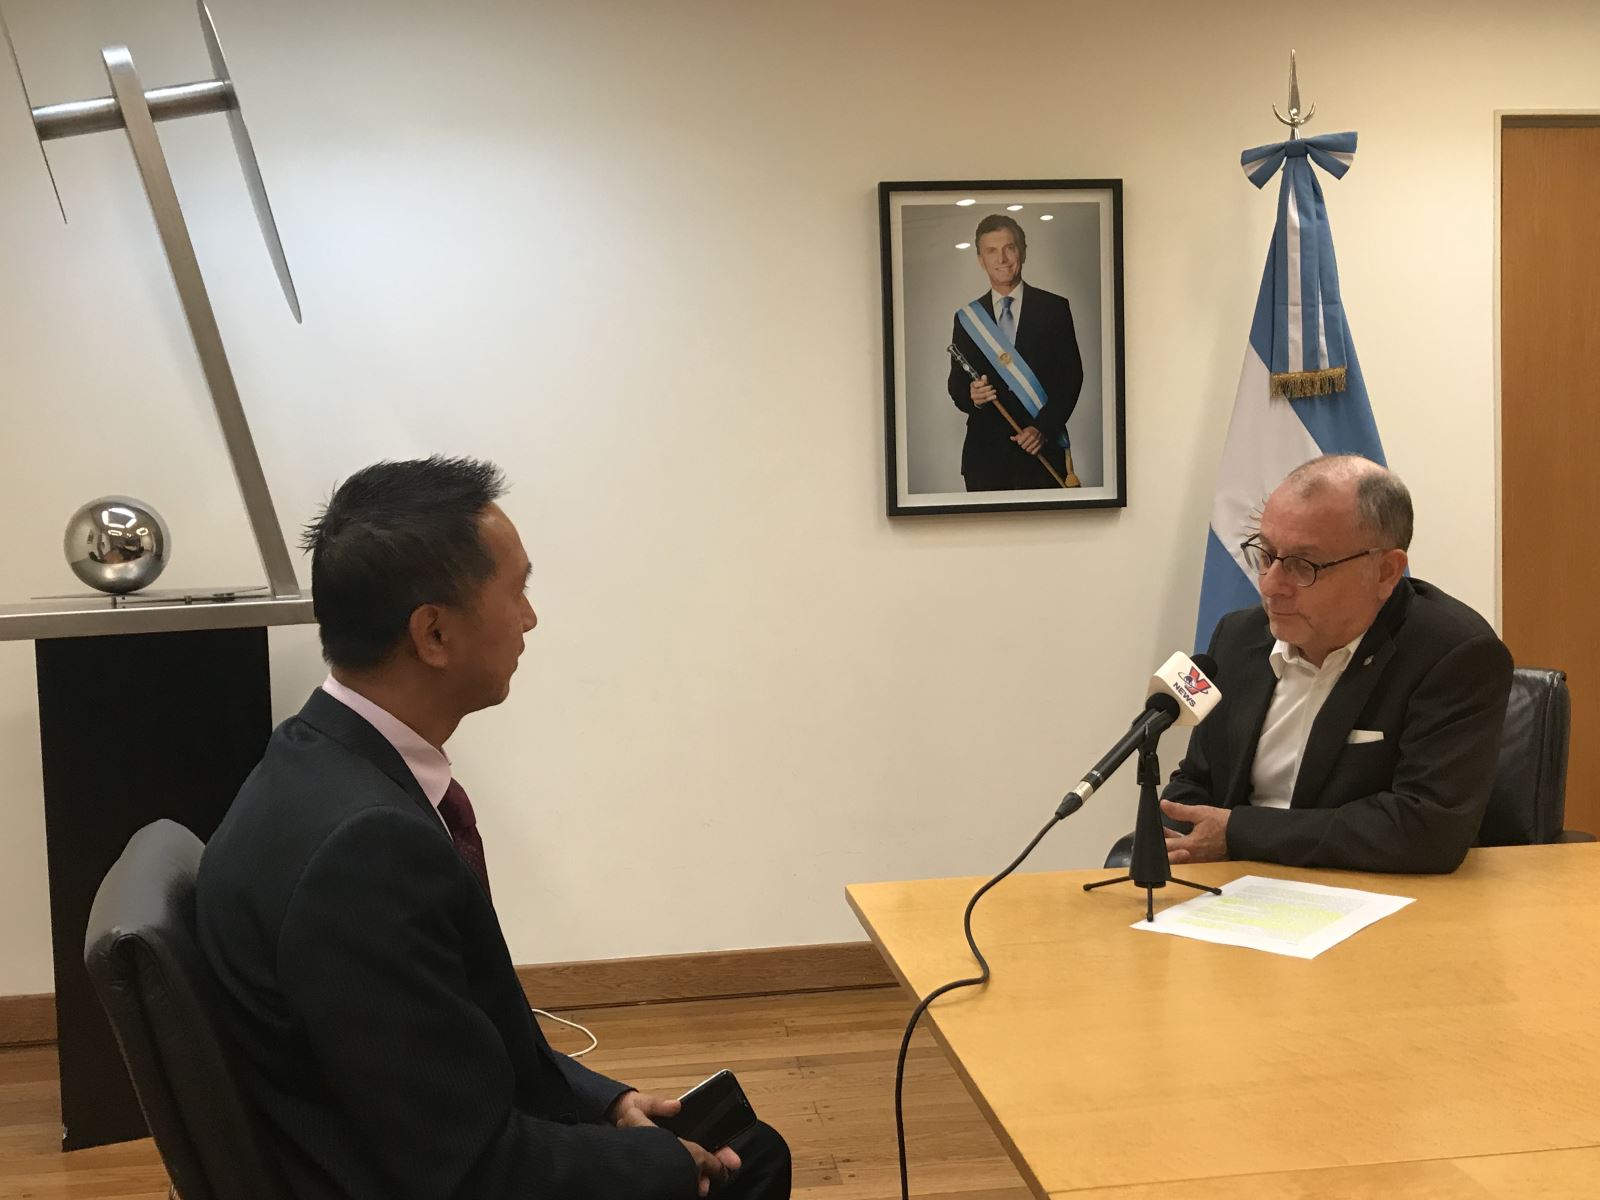 Mối quan hệ giữa Việt Nam và Argentina đang ngày càng được củng cố và phát triển với nhiều hoạt động hợp tác như thương mại, giáo dục và ngoại giao. Hãy tìm hiểu về những chương trình hợp tác giữa hai nước để hiểu rõ hơn về mối quan hệ đầy tiềm năng này.